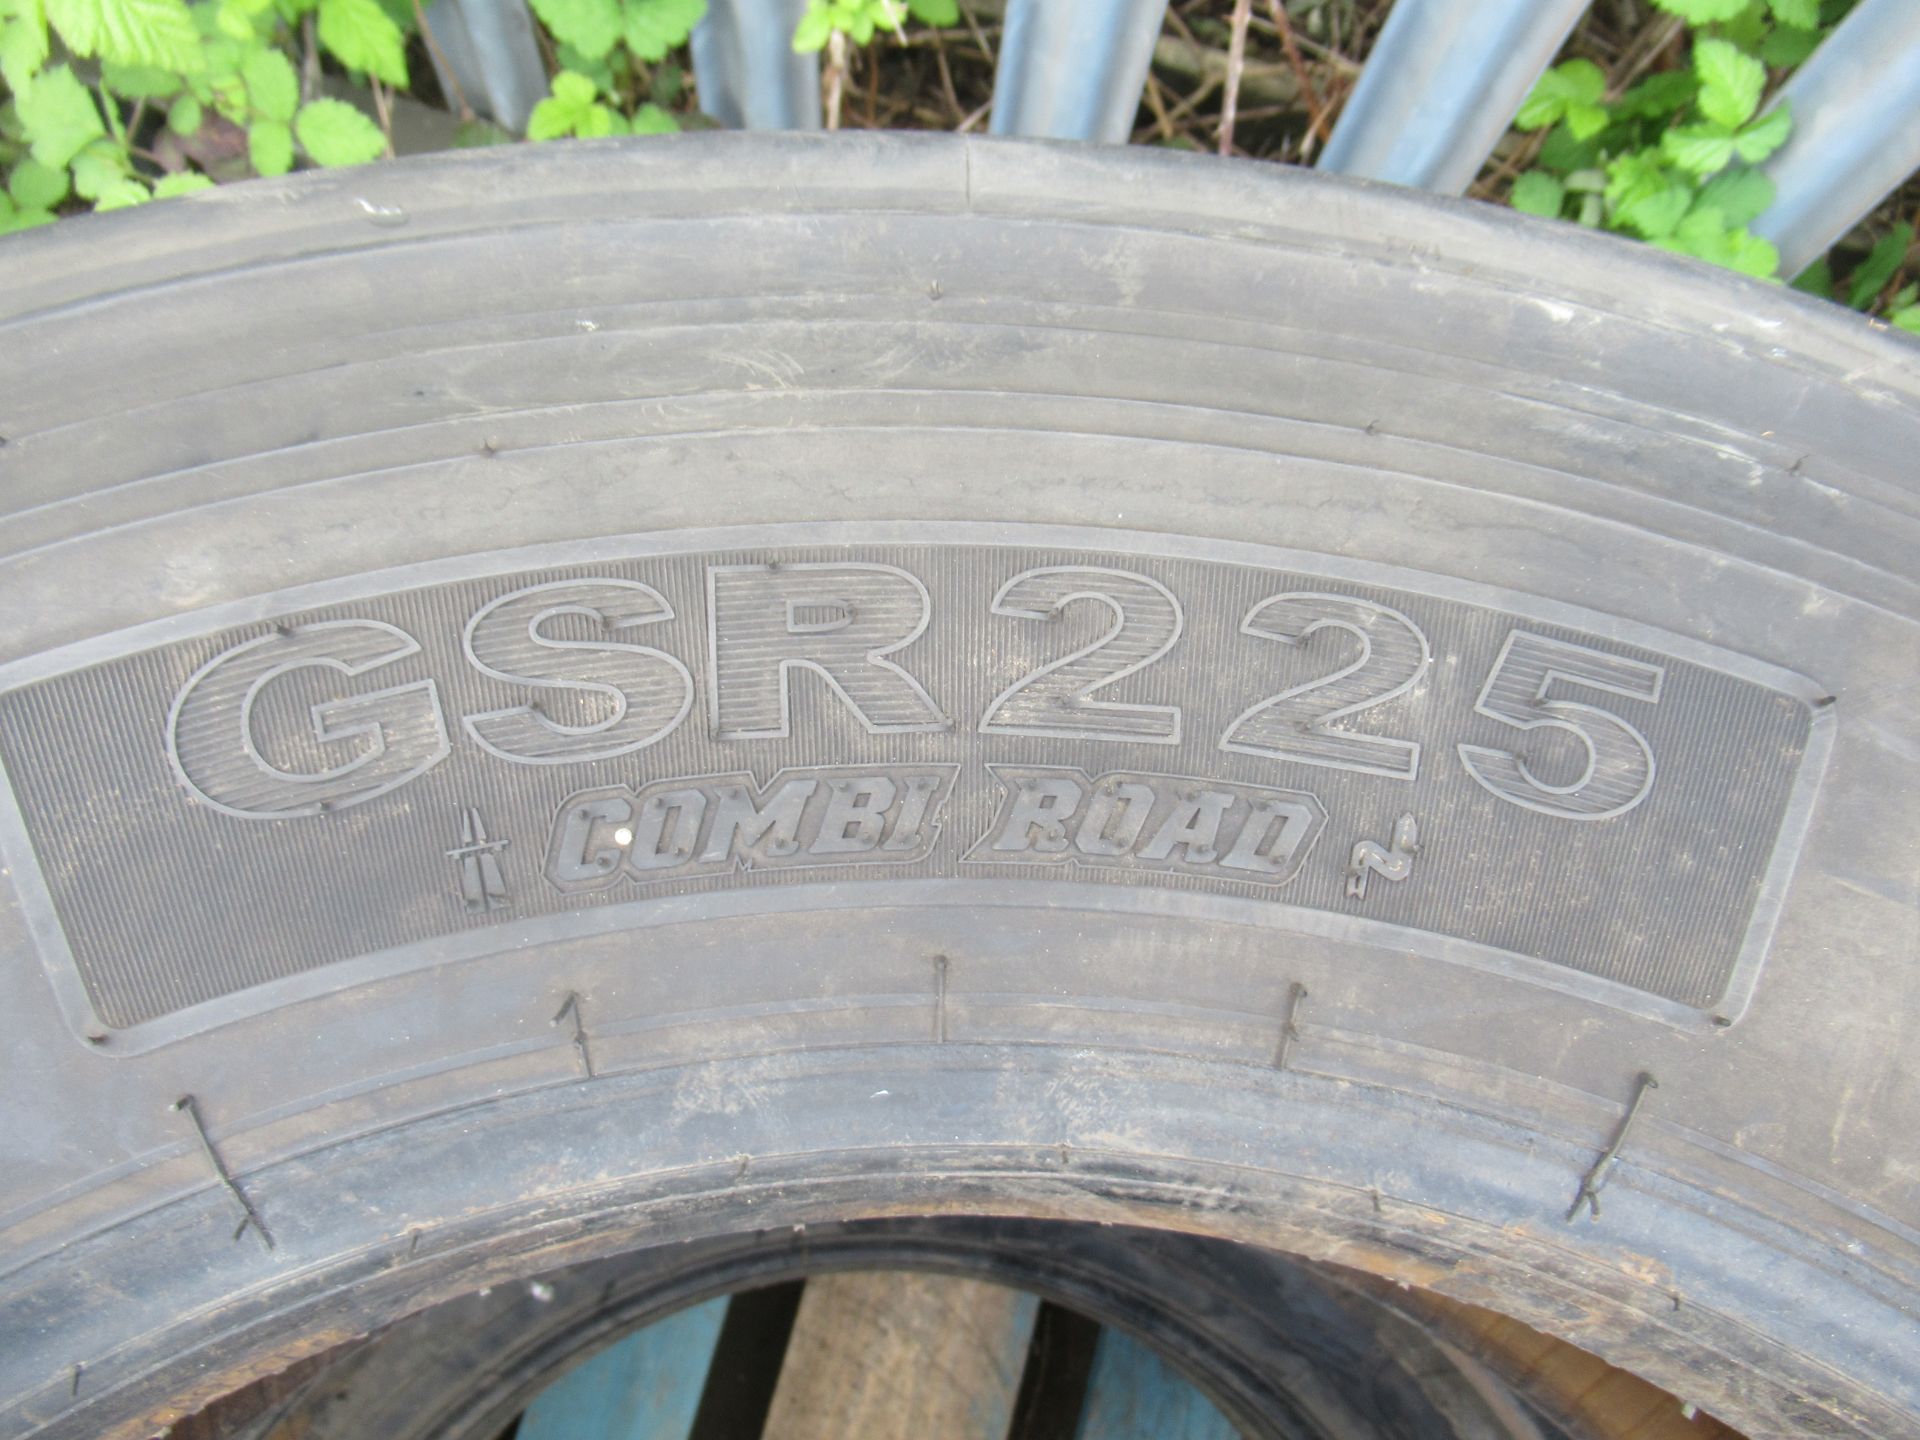 3x Partworn Tyres (275/70R/22.5, 275/80R/22.5, 275/80R/22.5) - Image 2 of 6